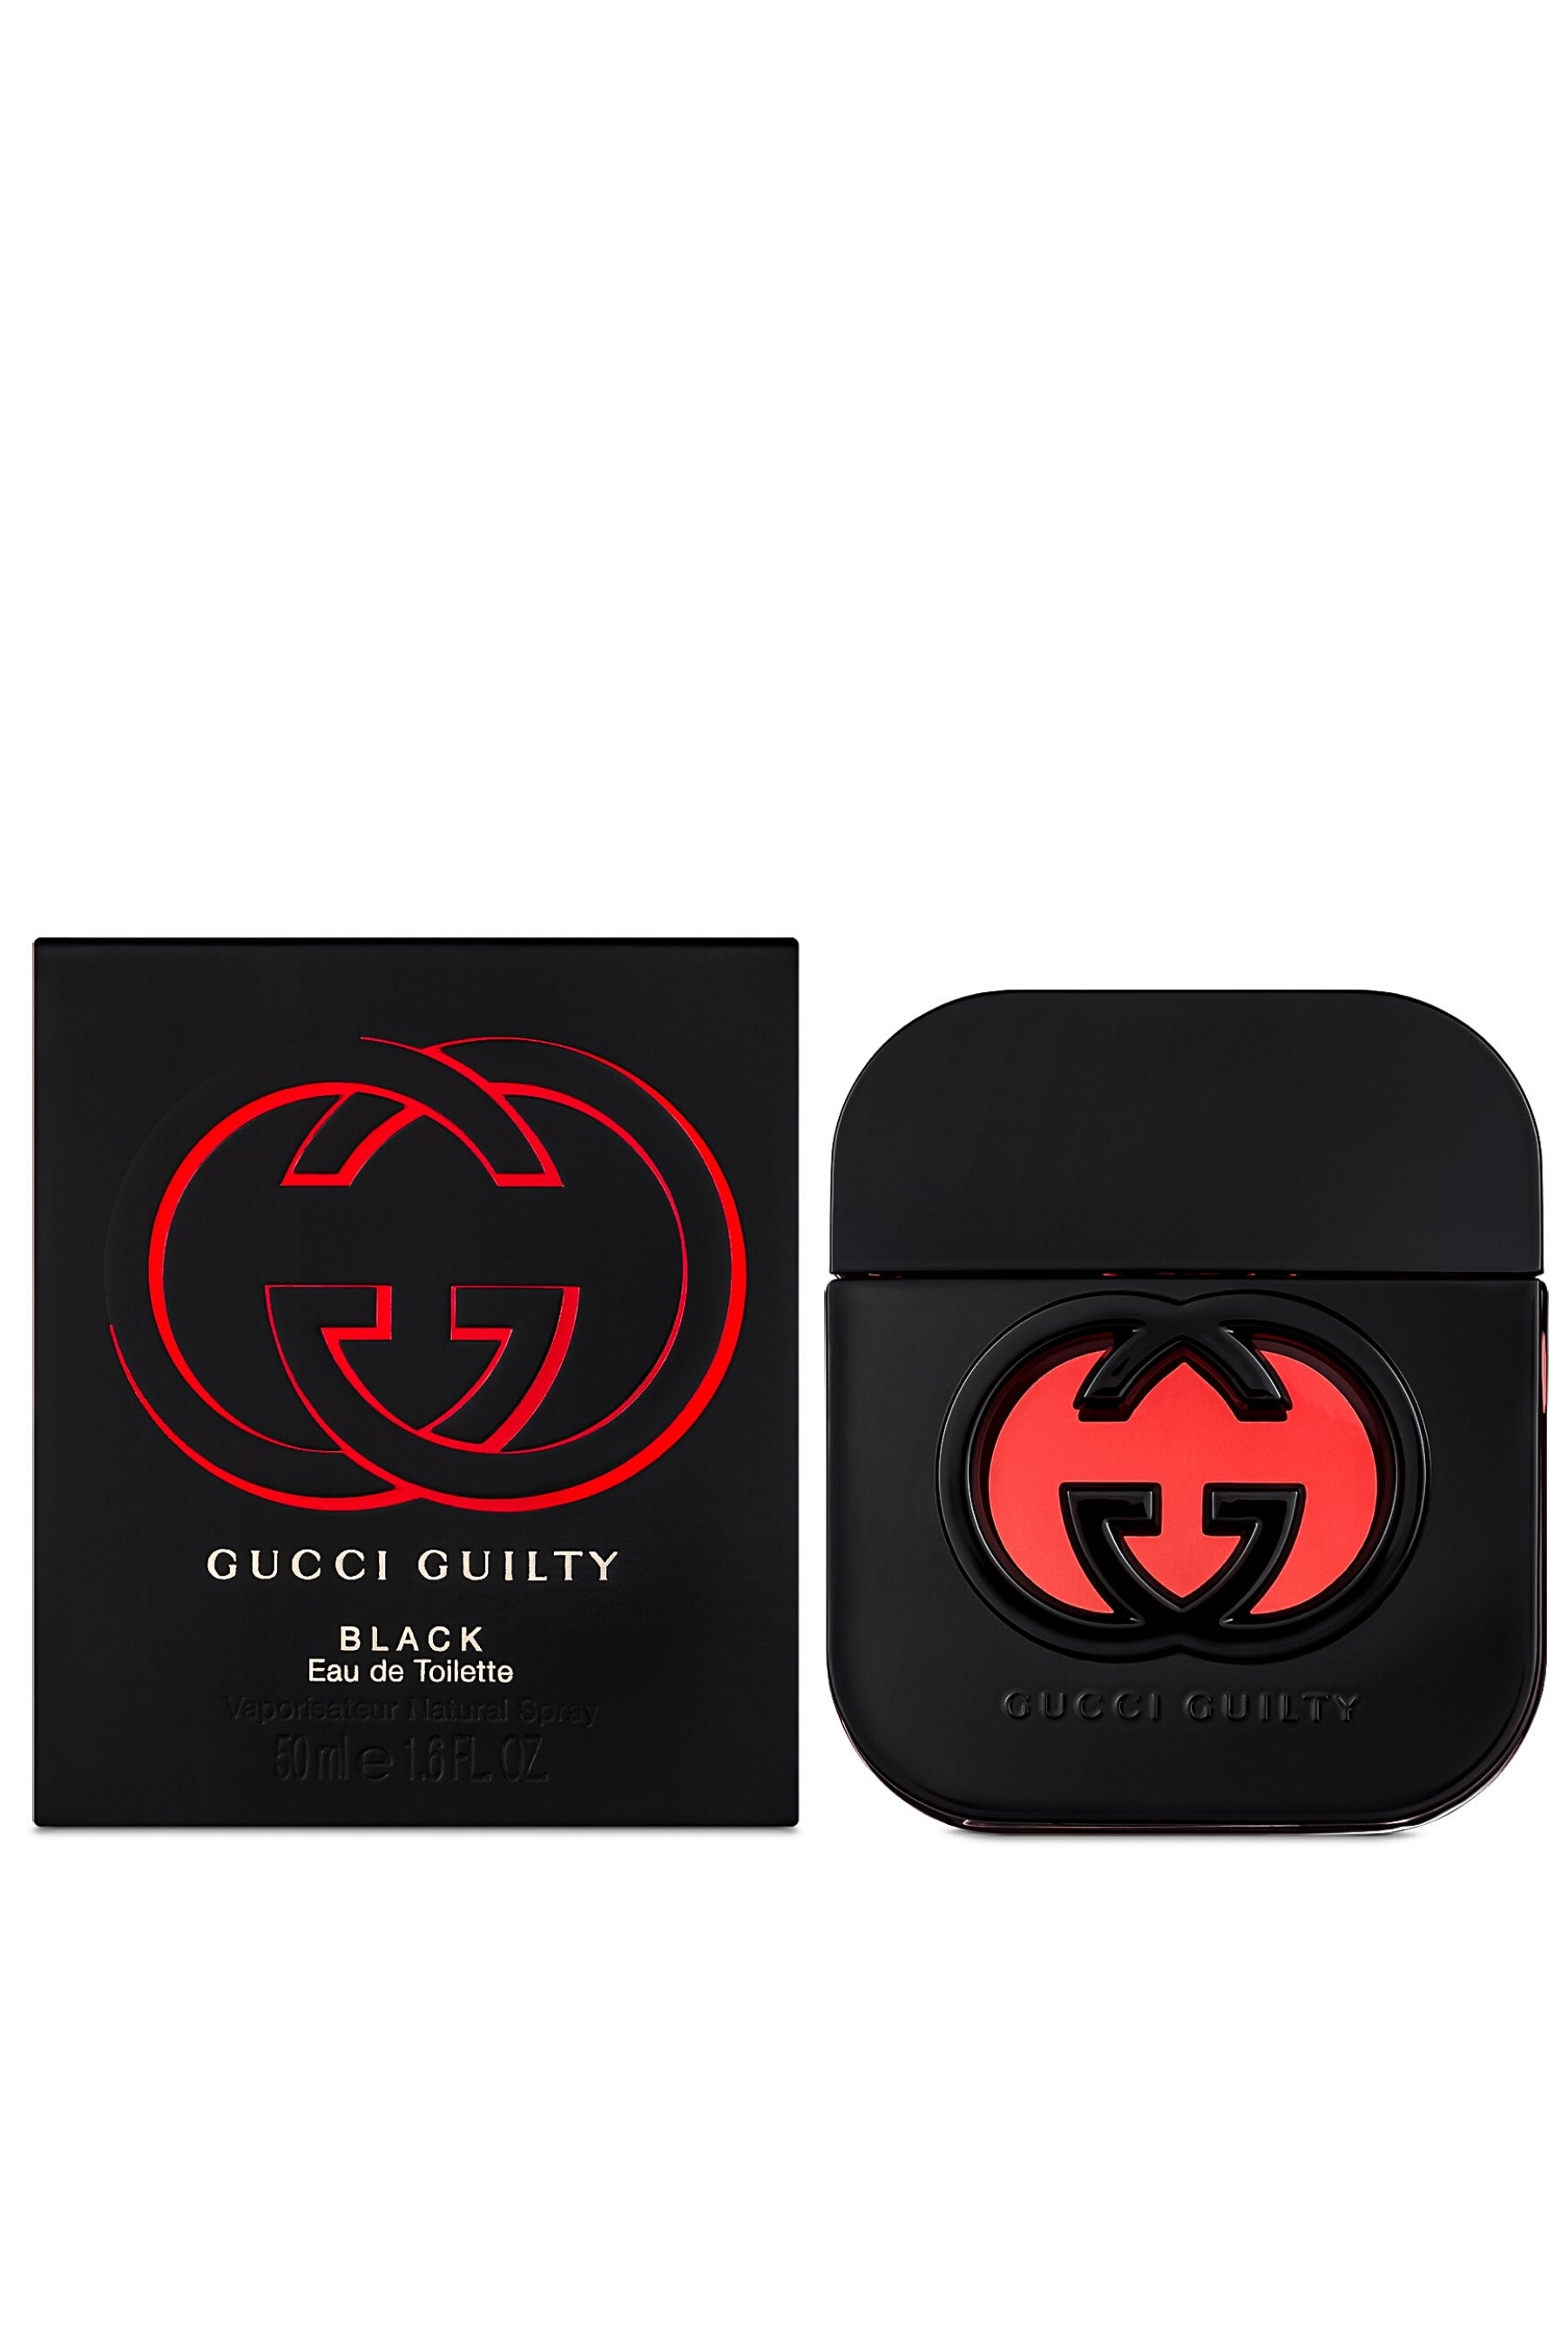 Gucci | Guilty Black Eau de Toilette - REBL